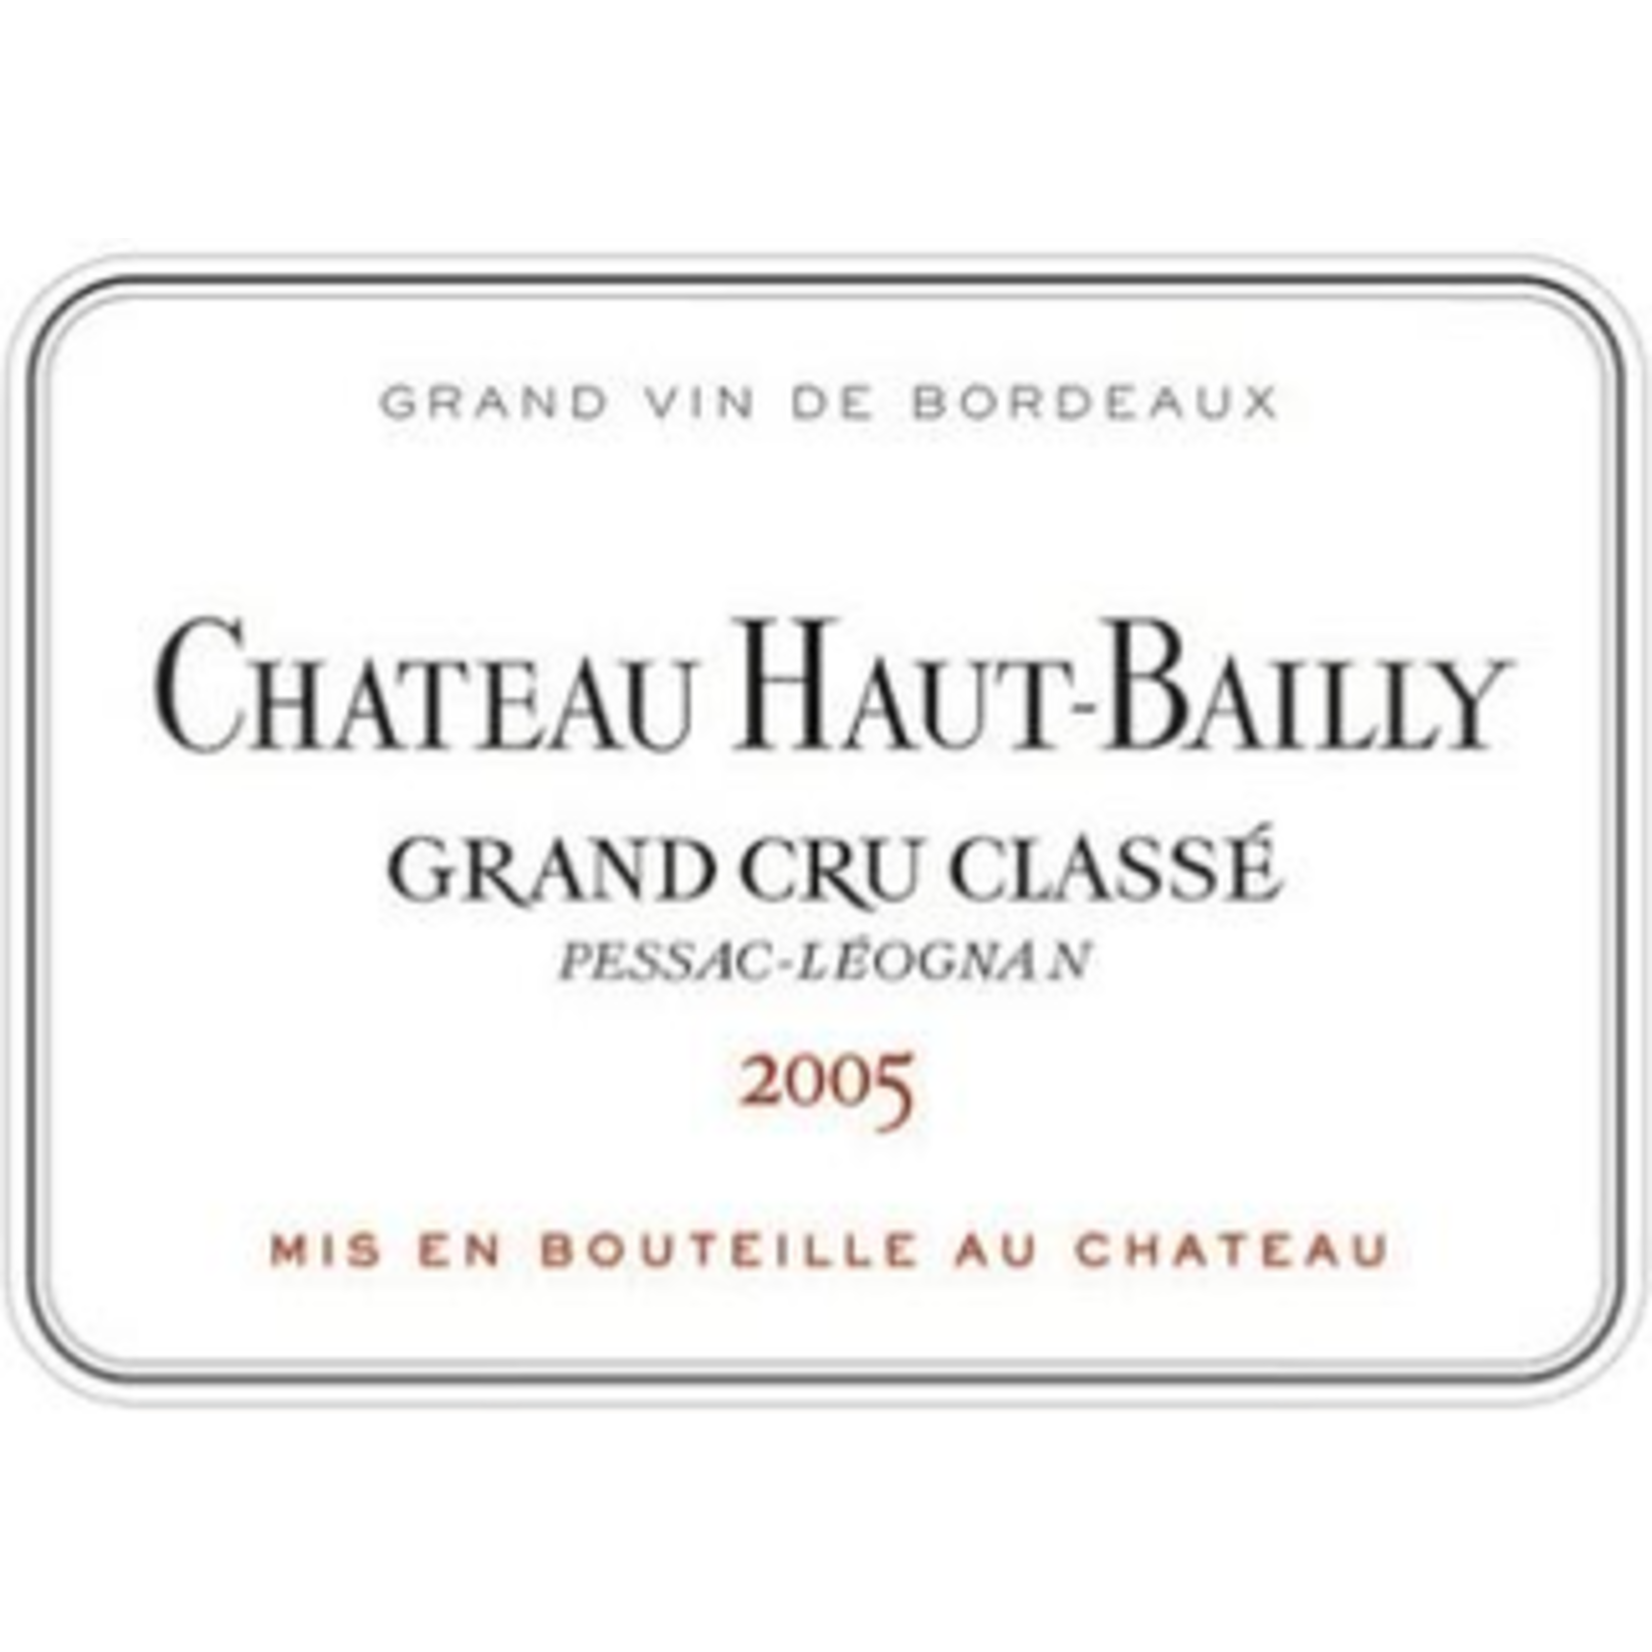 Wine Chateau Haut Bailly Grand Cru Classe Pessac-Leognan 2005